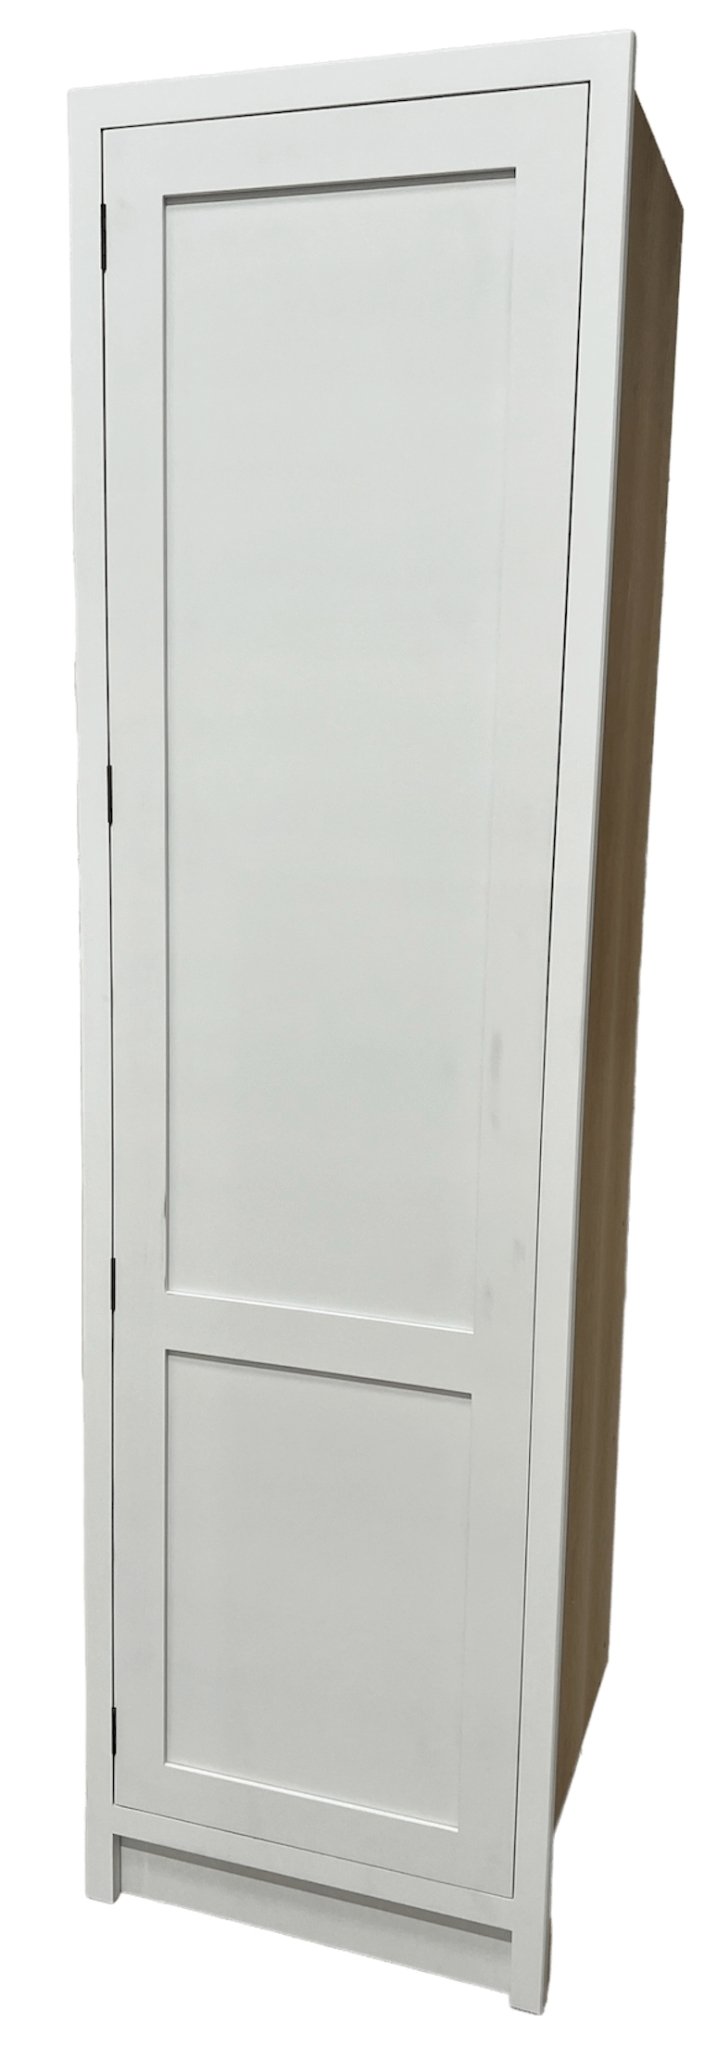 TL 600 - 600mm Wide Tall single door larder Unit - Classic Kitchens Direct